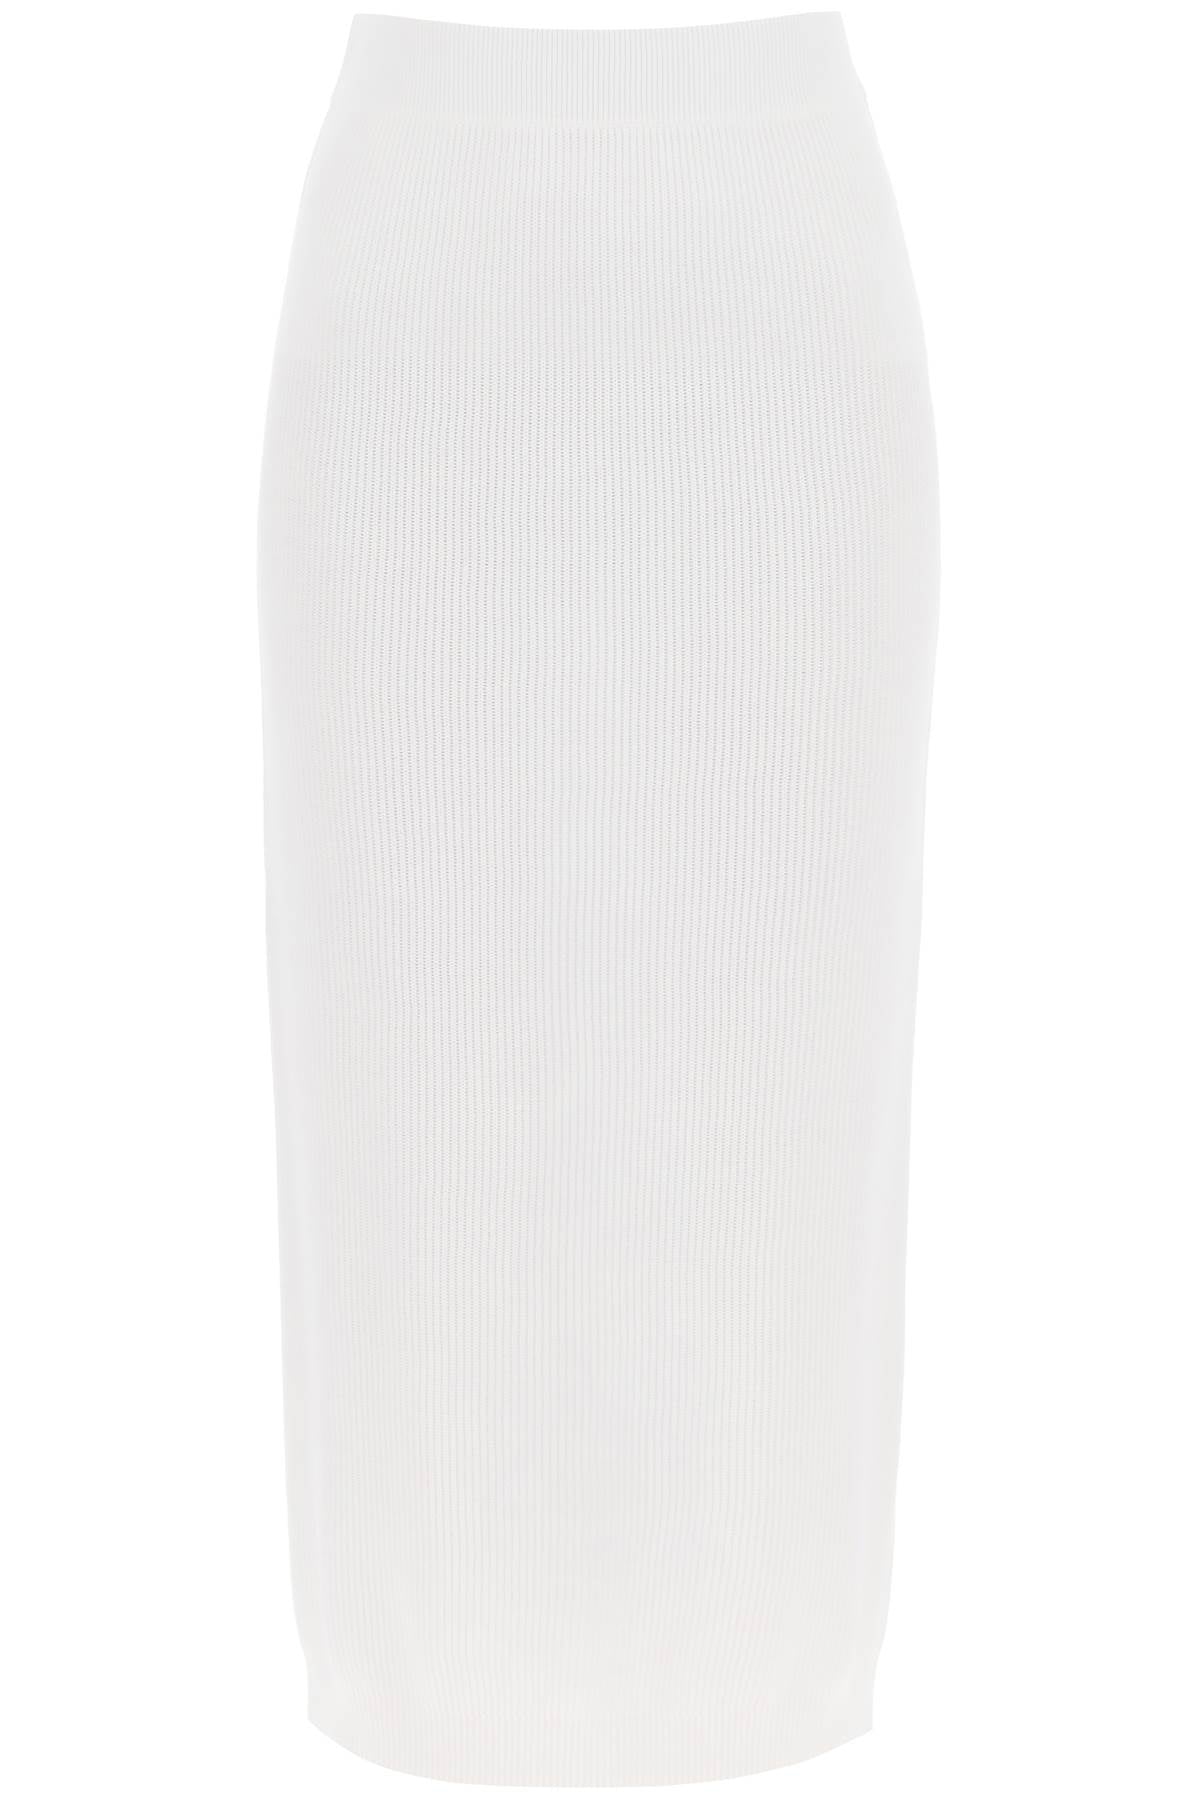 Chân váy midi dệt kim bằng cotton trắng cho phụ nữ